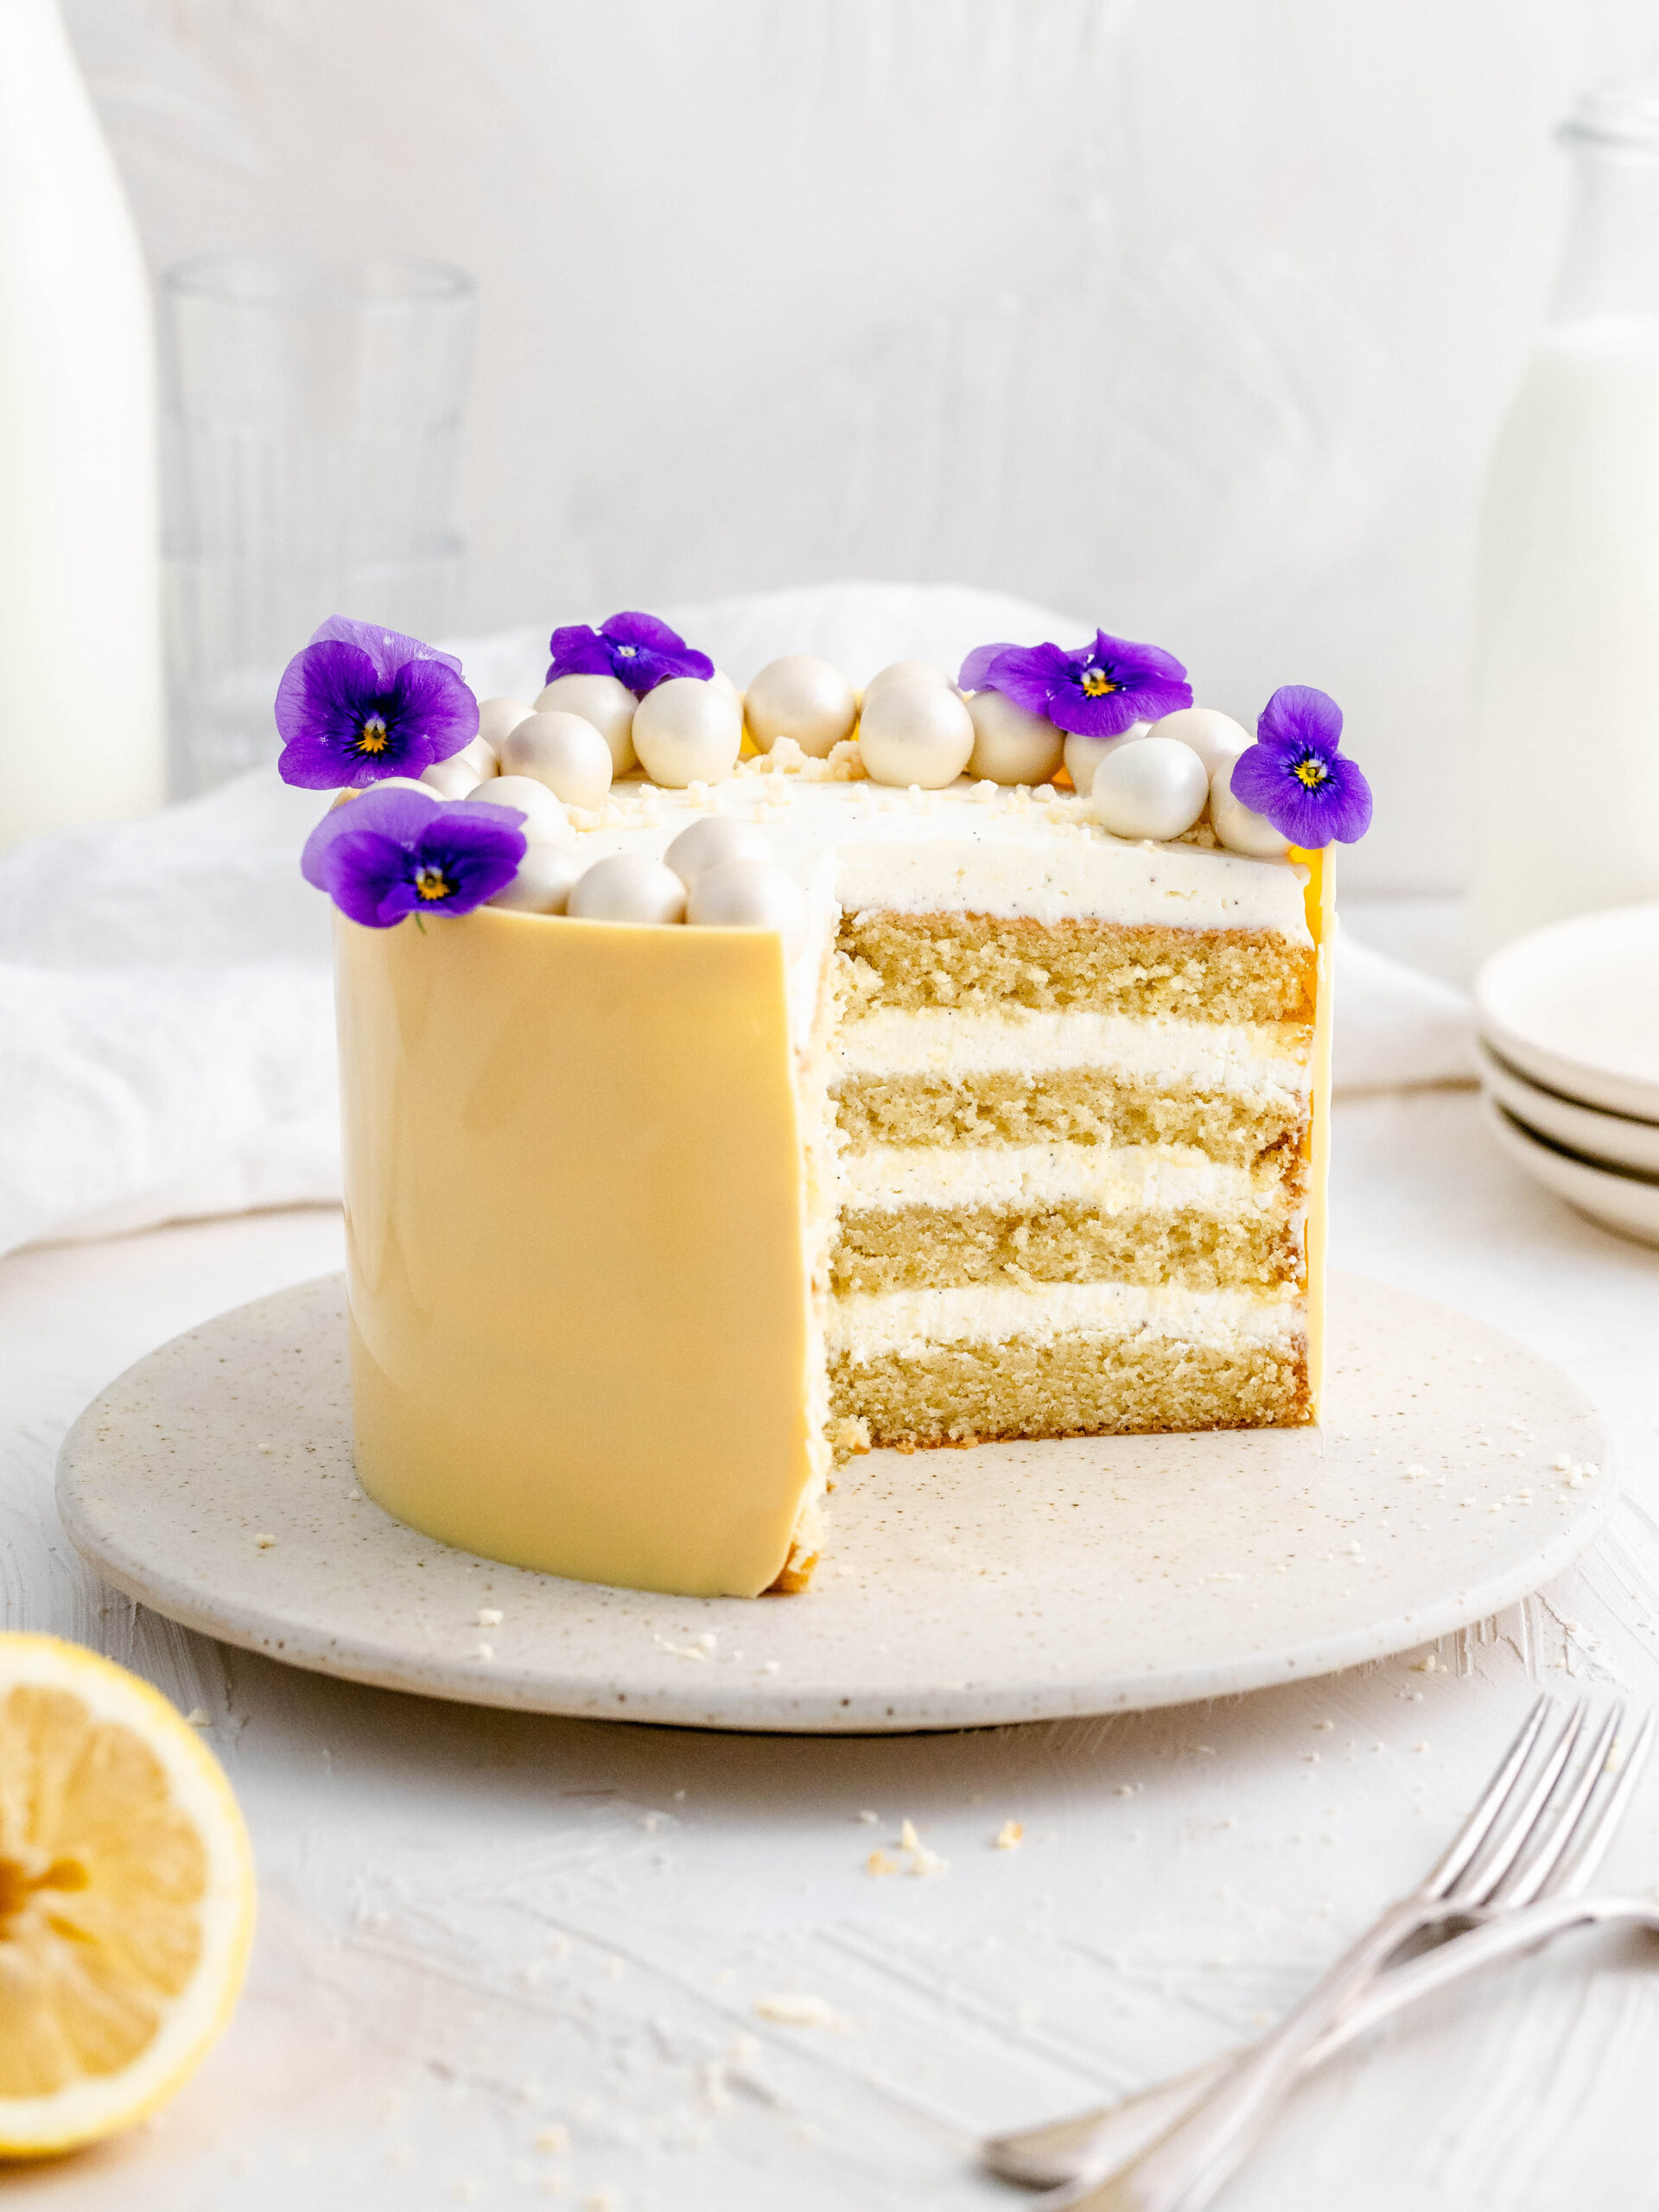 lemon and mascarpone cake on a cake stand.